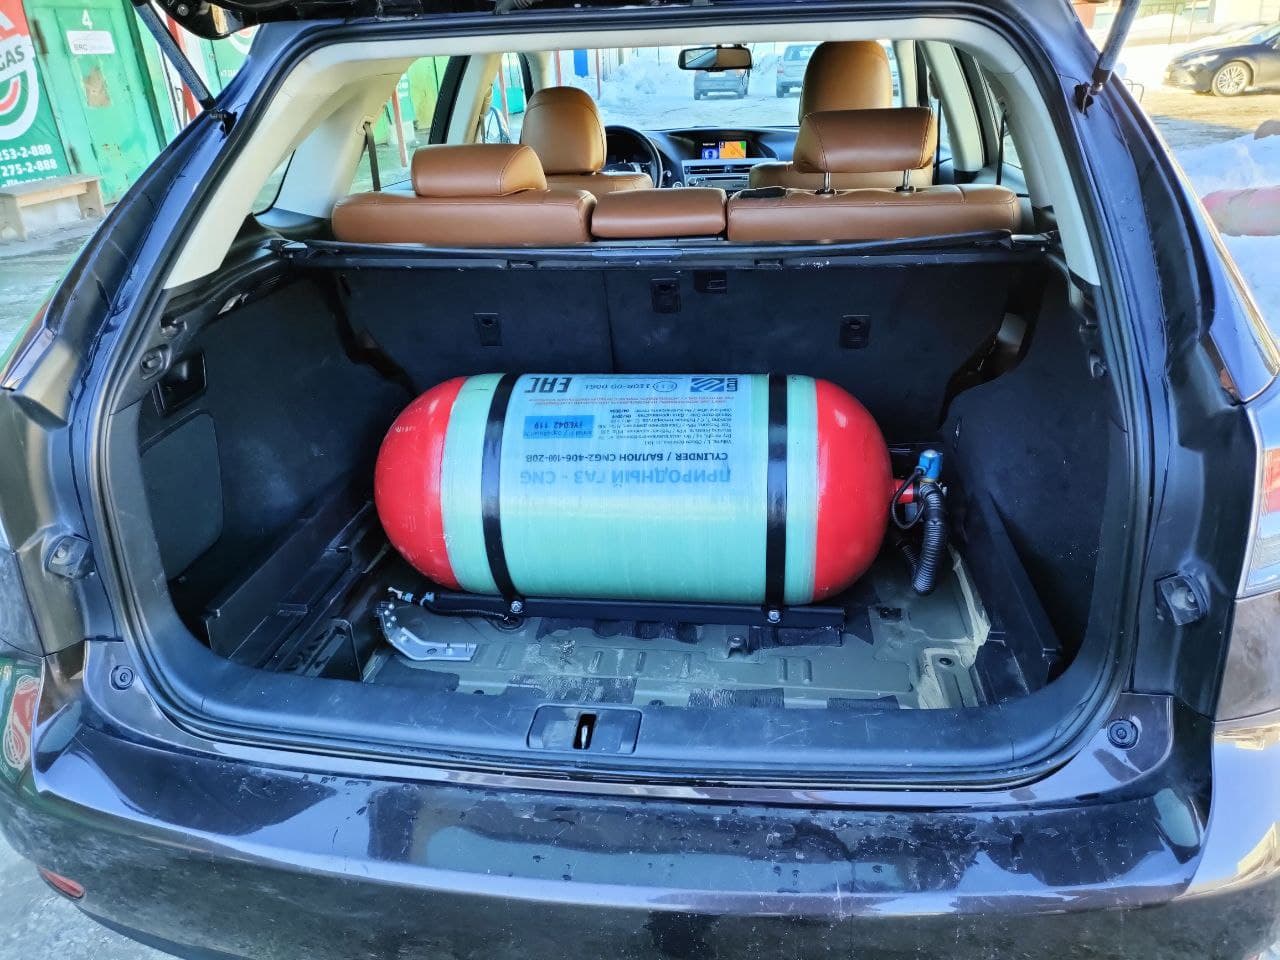 Метановый баллон (тип 2) 100 л установлен в багажнике